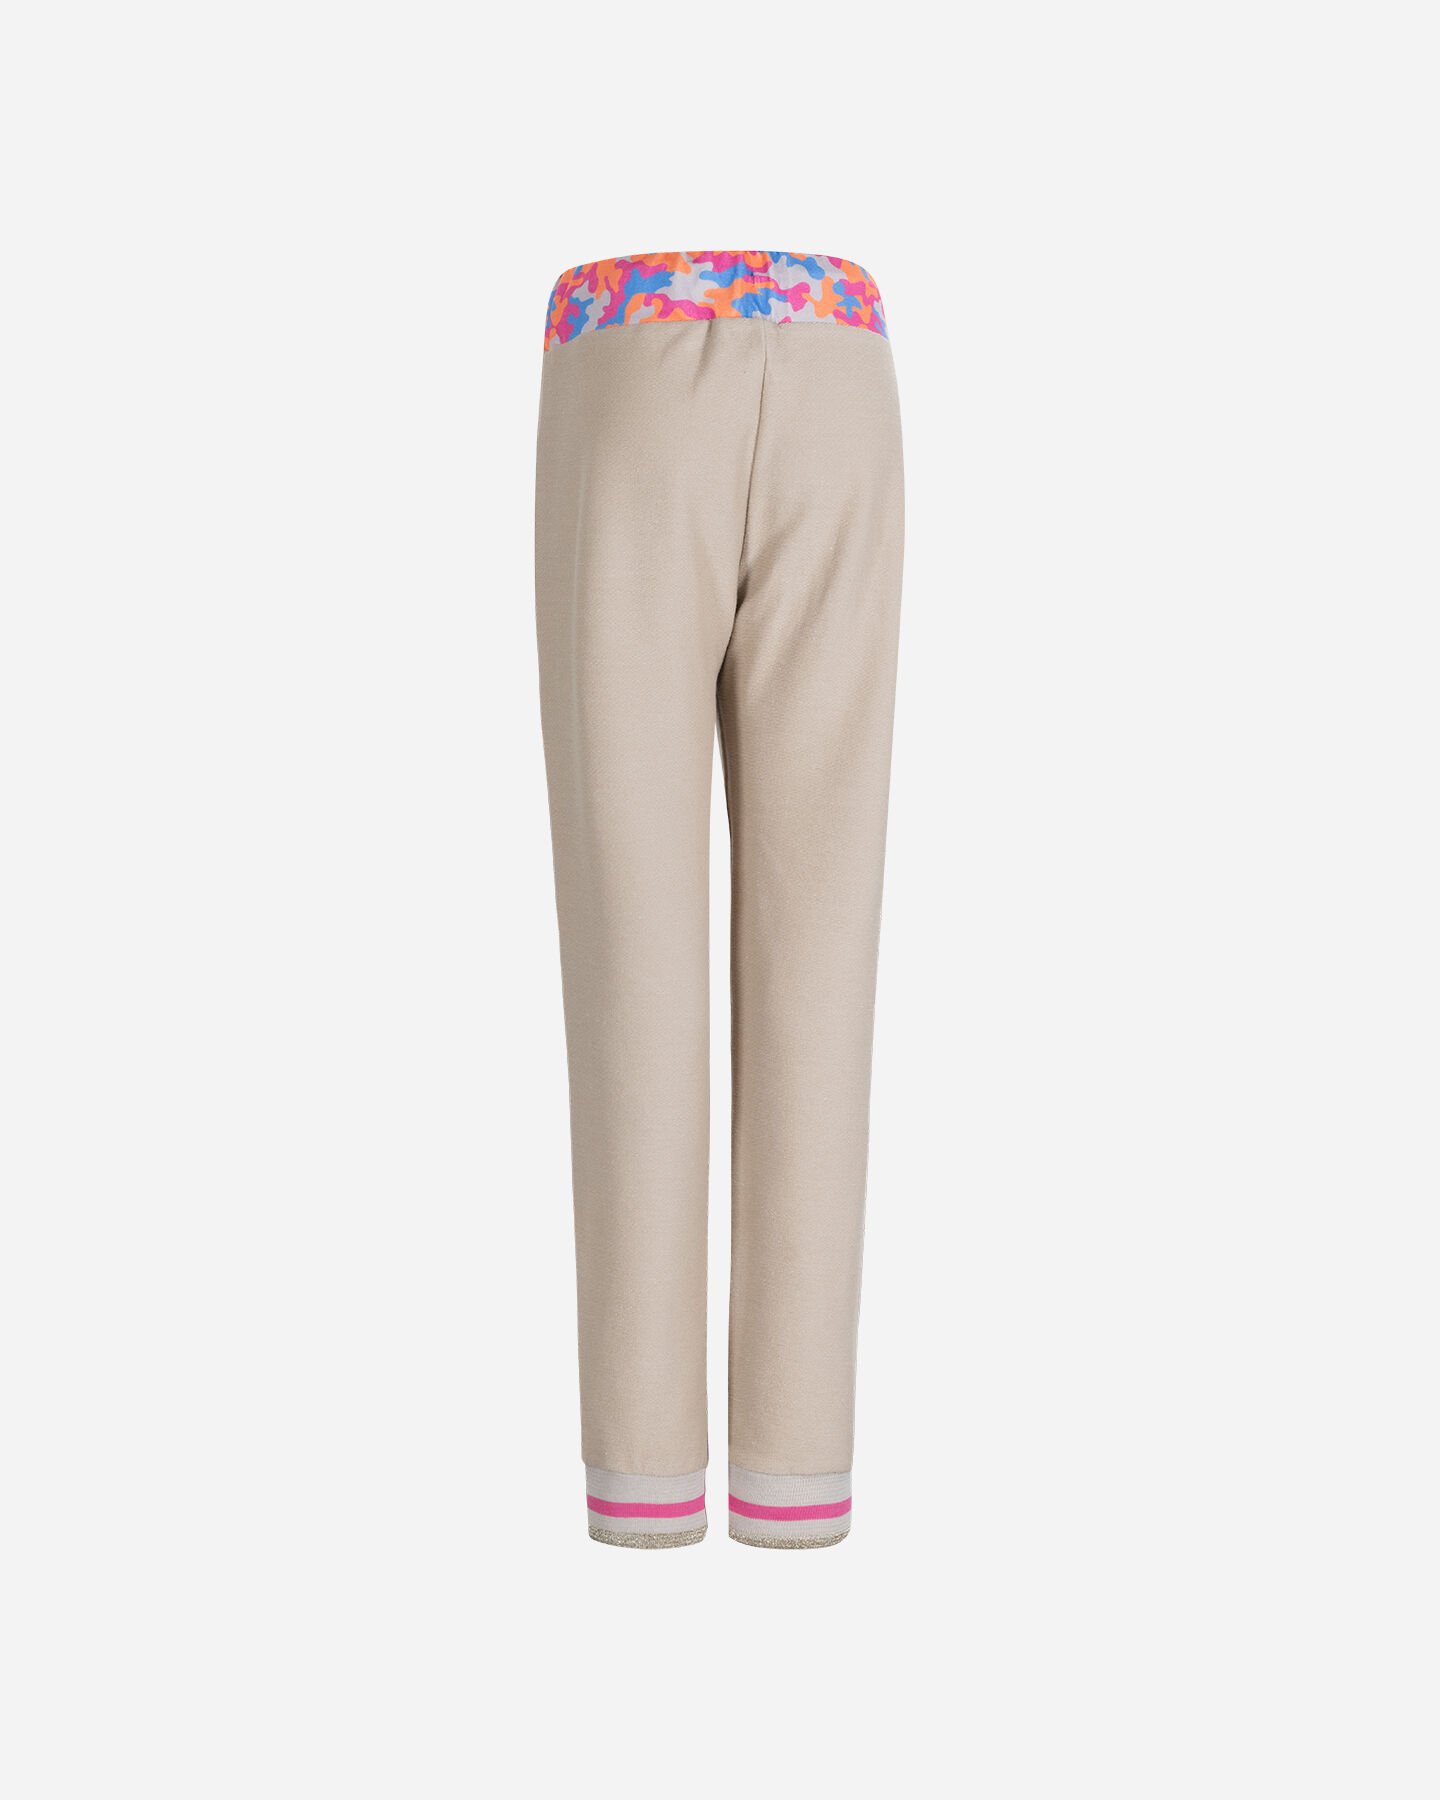  Pantalone FREDDY CLASSIC JR S4120784|016|10A scatto 1